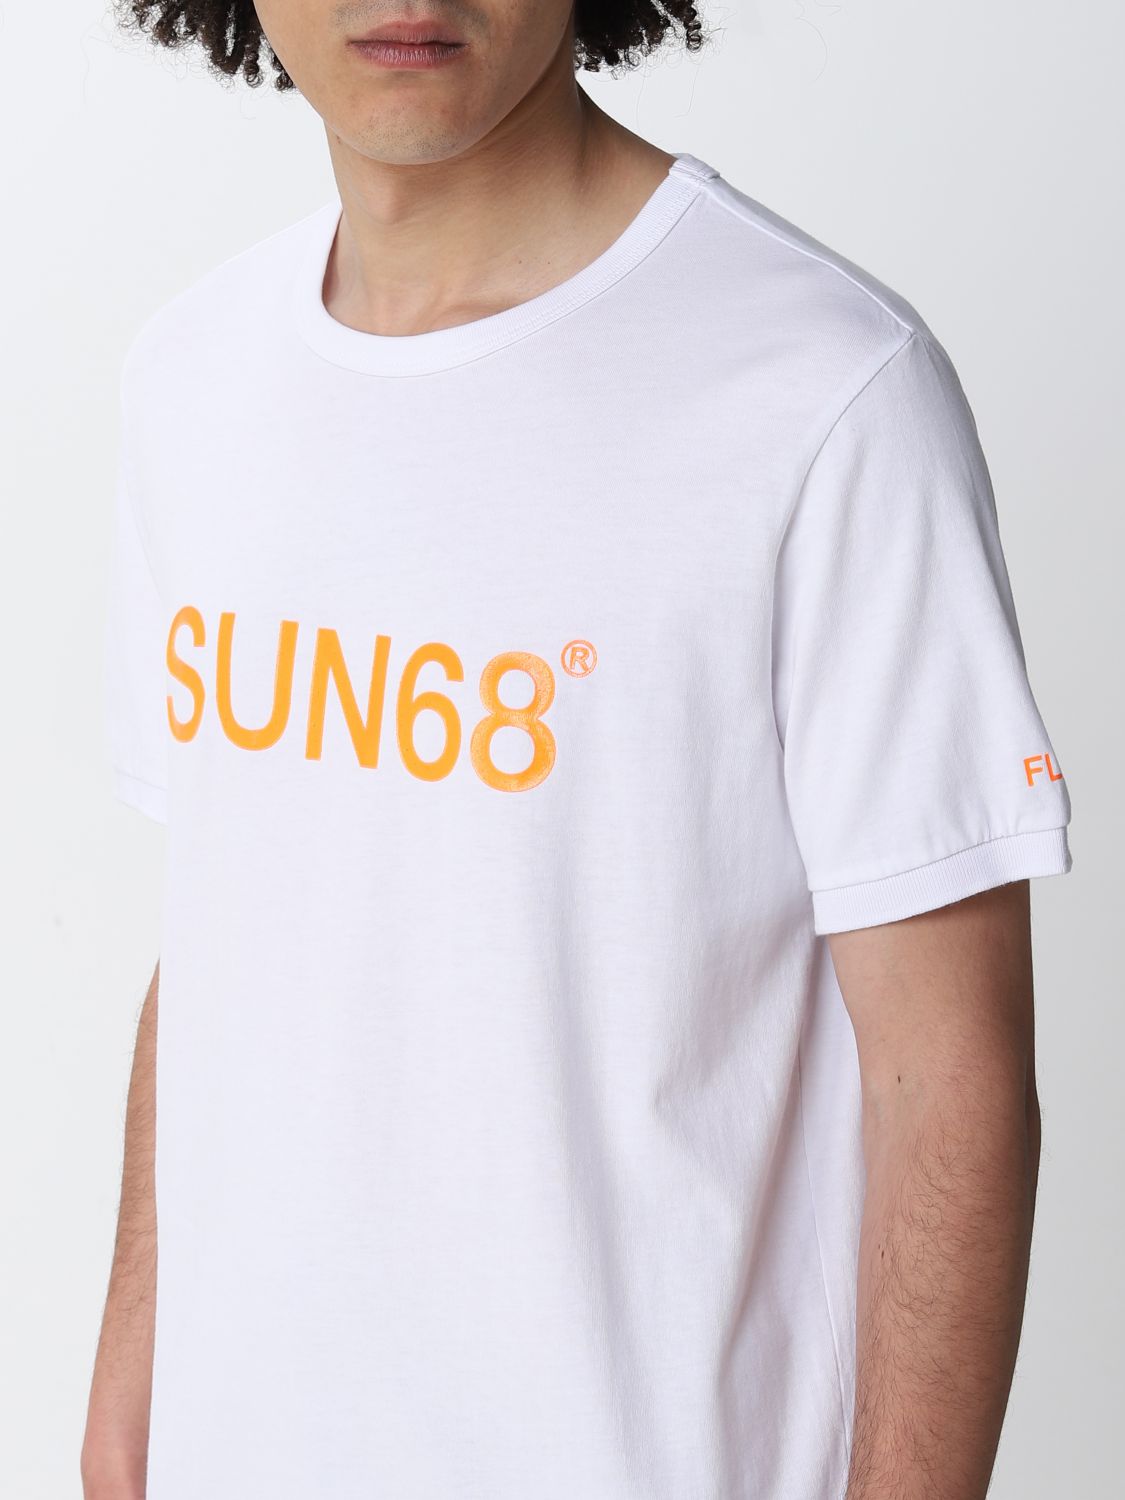 T-shirt Sun 68: Sun 68 t-shirt for man white 3